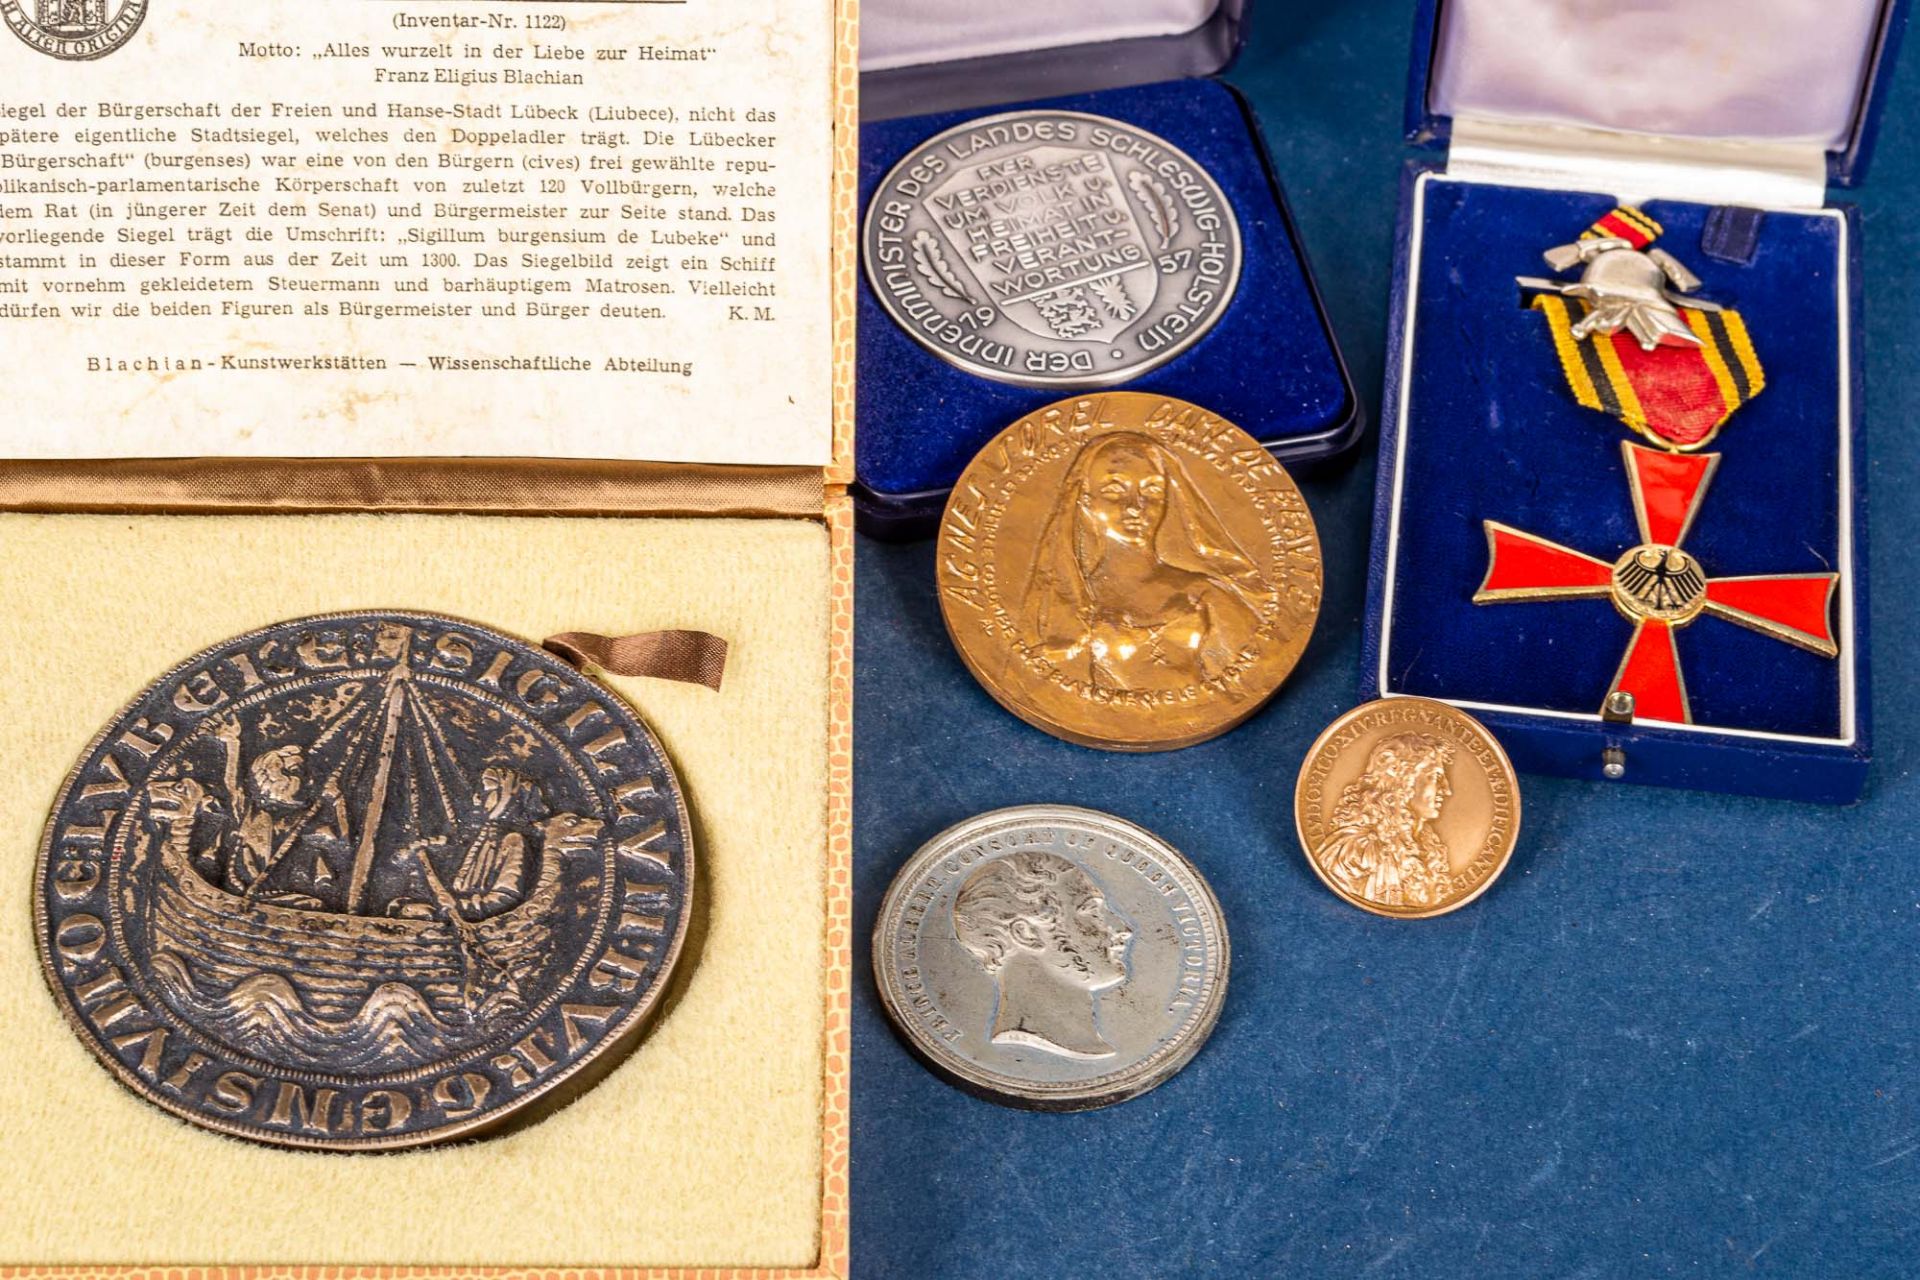 8teiliges Konvolut versch. Münzen, Medaillen und Abzeichen. Versch. Alter, Größ - Image 2 of 4